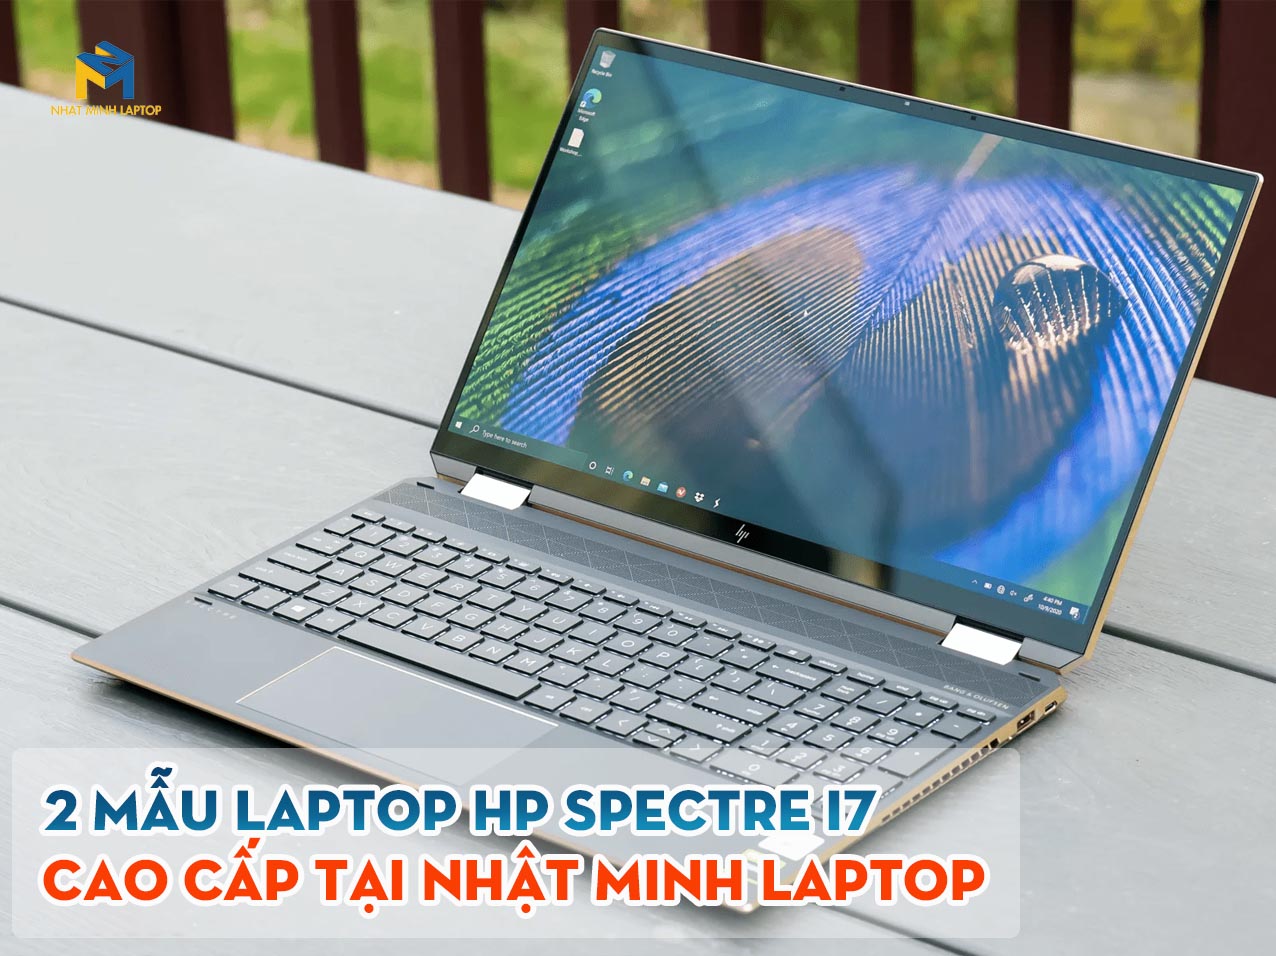 2 Mẫu Laptop HP Spectre i7 cao cấp, giá tốt tại Nhật Minh Laptop